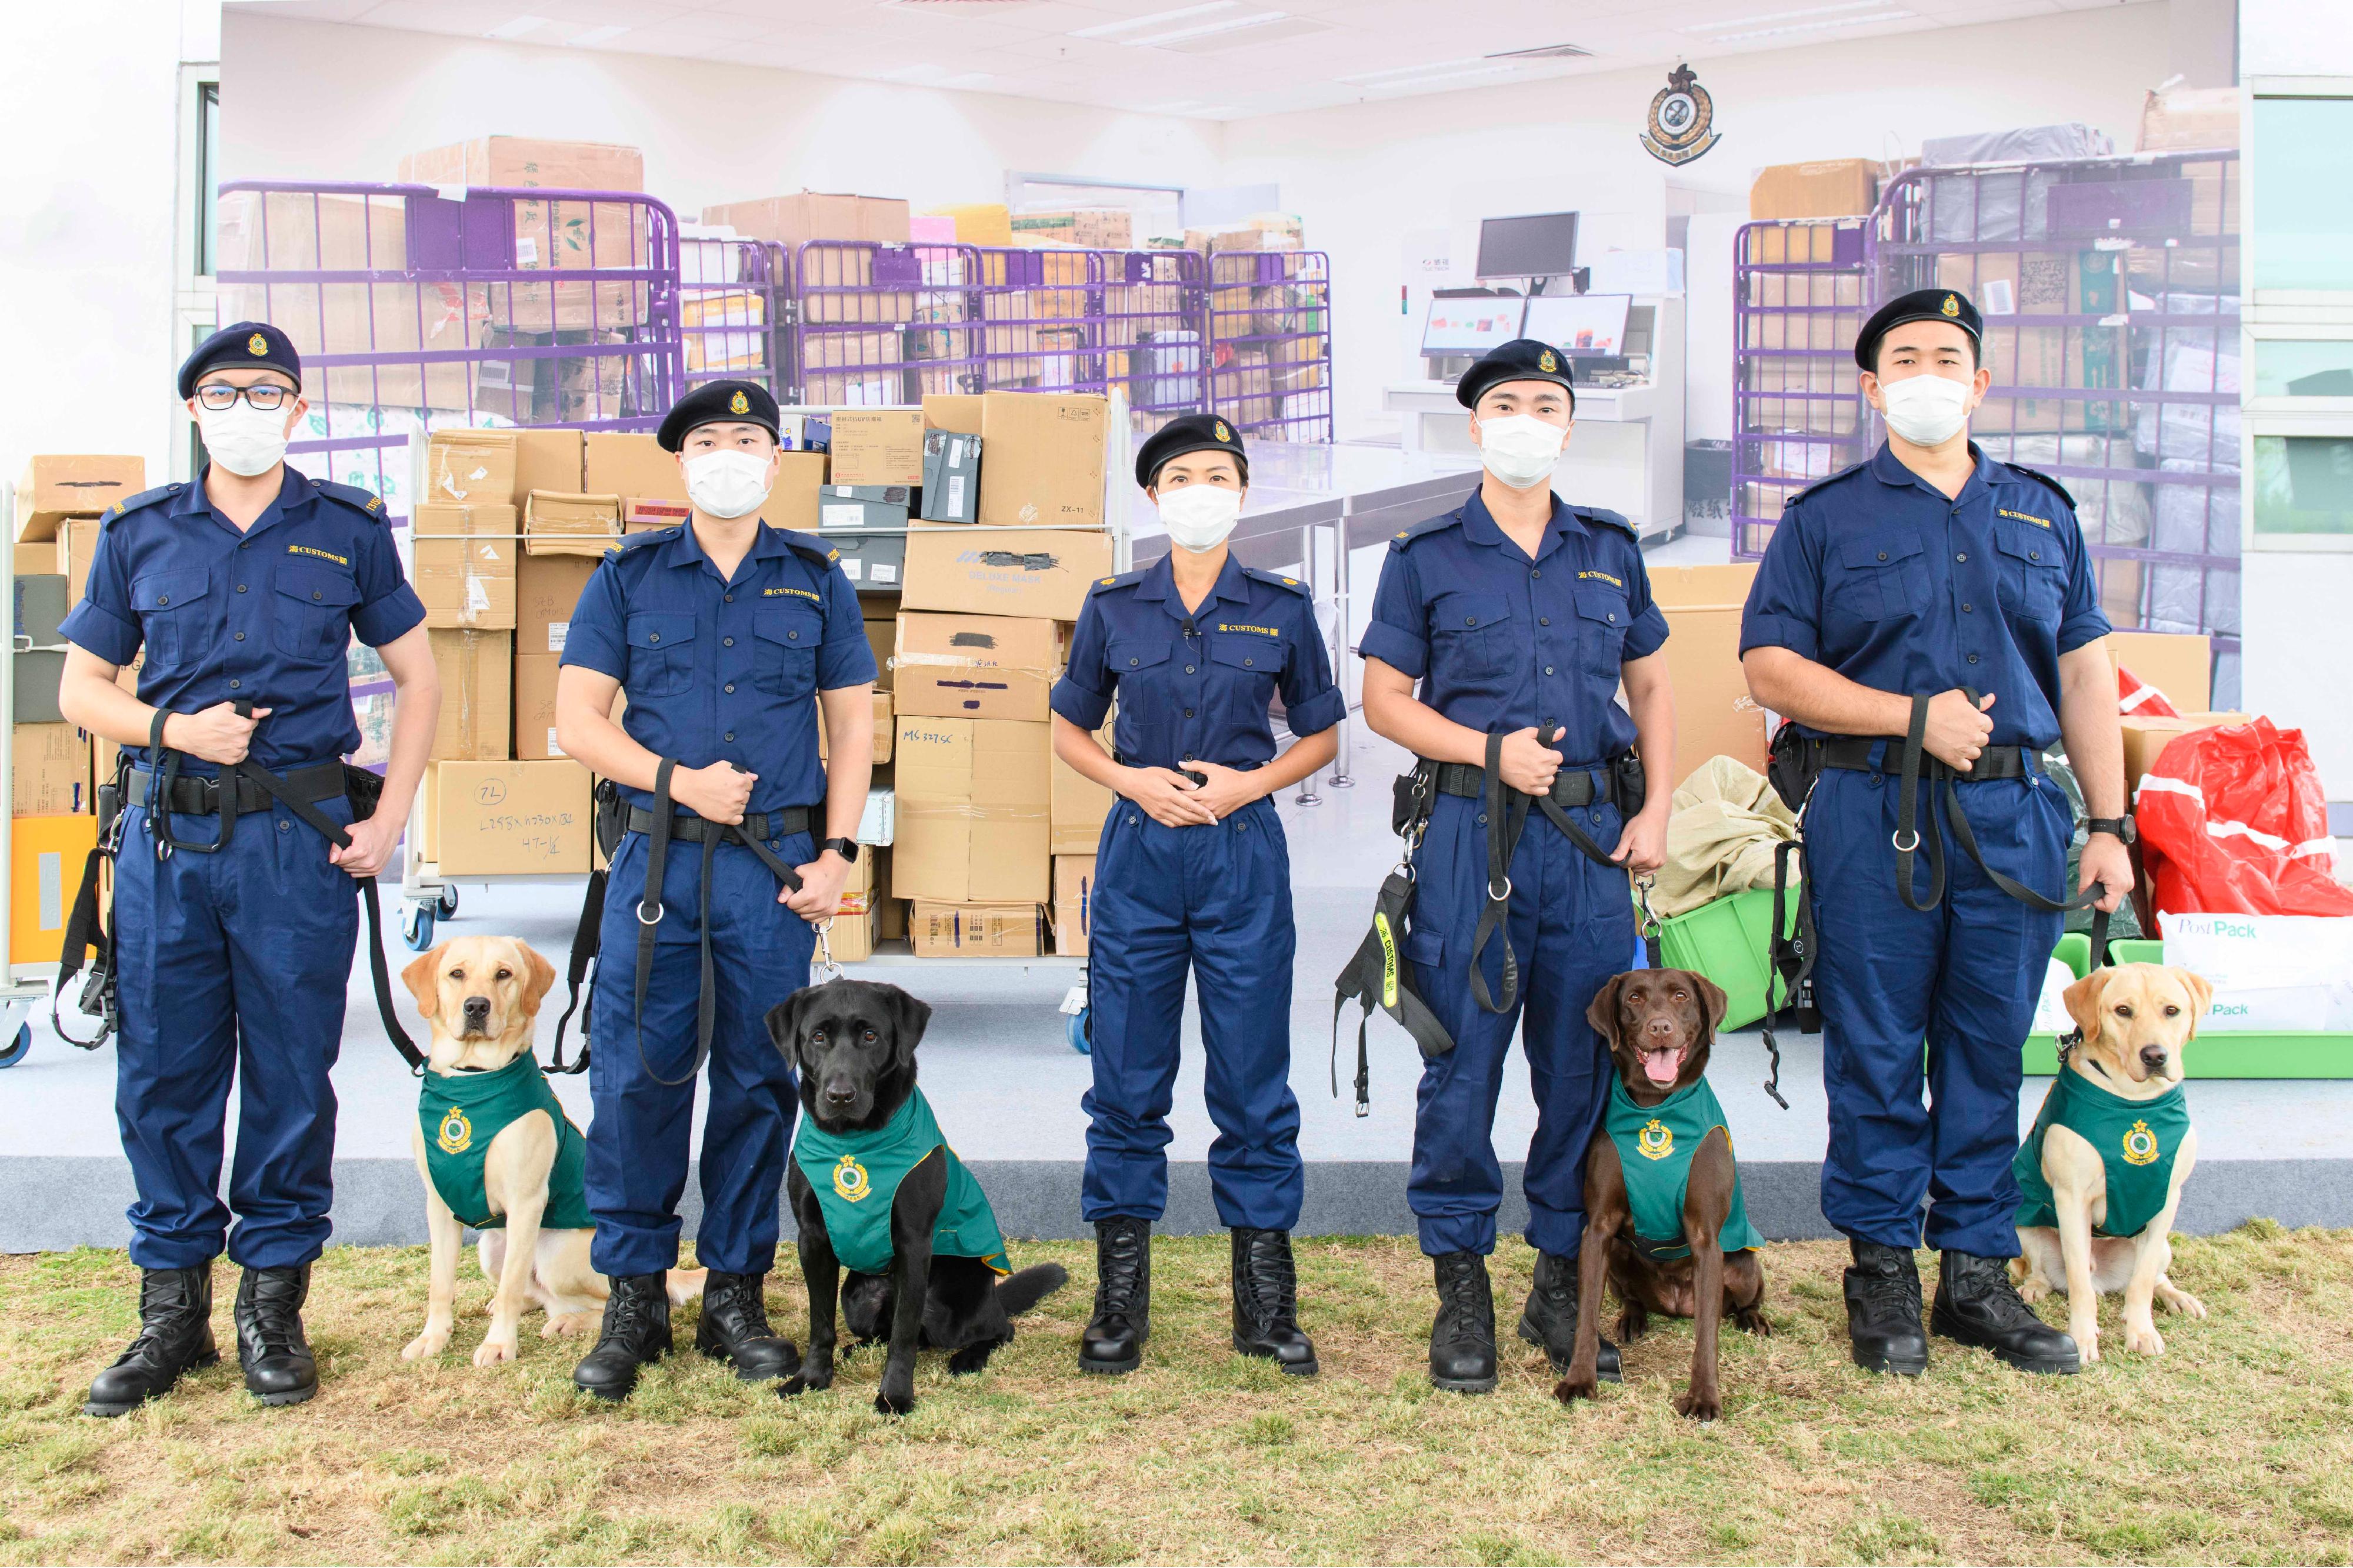 香港海关今日（十二月十五日）公布，正式成立首支枪械搜查犬队，以进一步加强海关在前线堵截非法枪械、枪械配件和弹药流入香港的能力，防范恐怖活动，保护市民生命和维护国家安全。图示海关搜查犬课监督黄惜忻（中）与四只枪械搜查犬（左起）Nicky、Wrangler、Quick和Gasper及它们的领犬员合照。